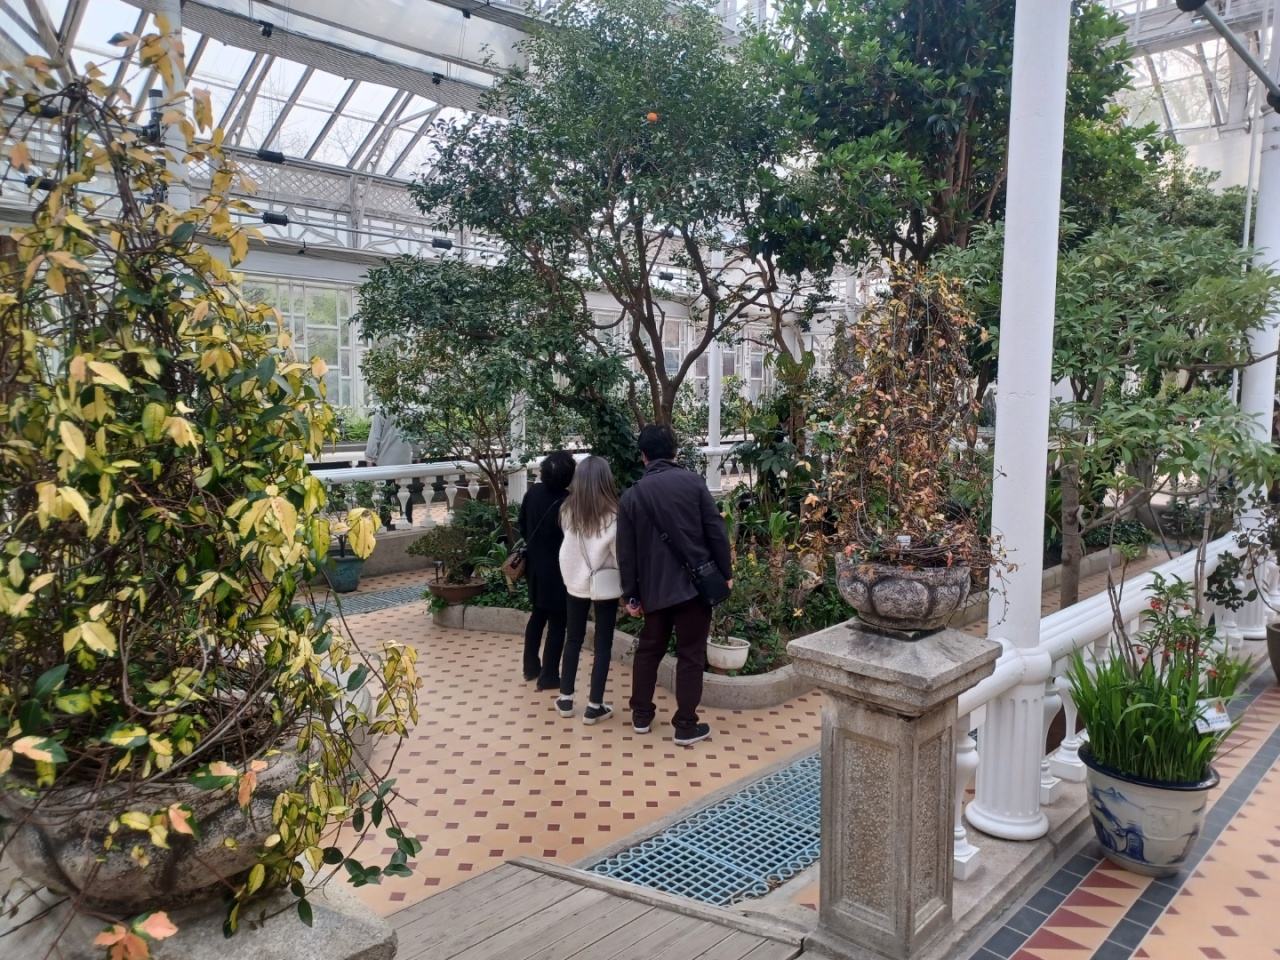 그랜드그린하우스에서 관람객들이 감귤속 식물을 바라보고 있다(이시진/코리아헤럴드)